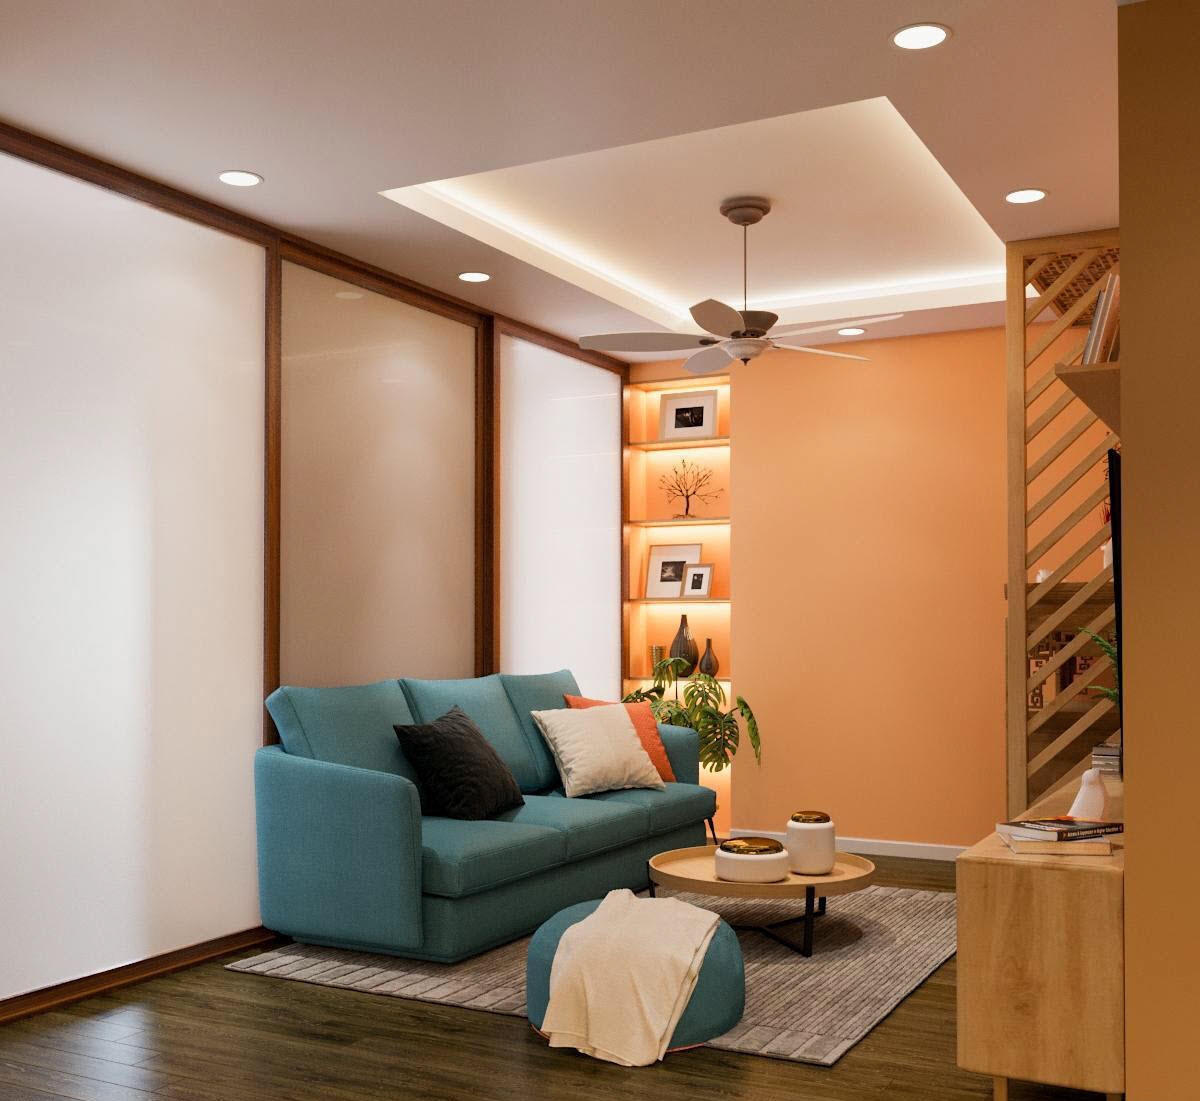 Phòng khách căn hộ 85m2 được thiết kế gọn gàng, thoáng đẹp với bộ ghế sofa màu xanh dương nhẹ nhàng, tương phản và nổi bật trên nền sàn gỗ nâu, thảm ghi xám.